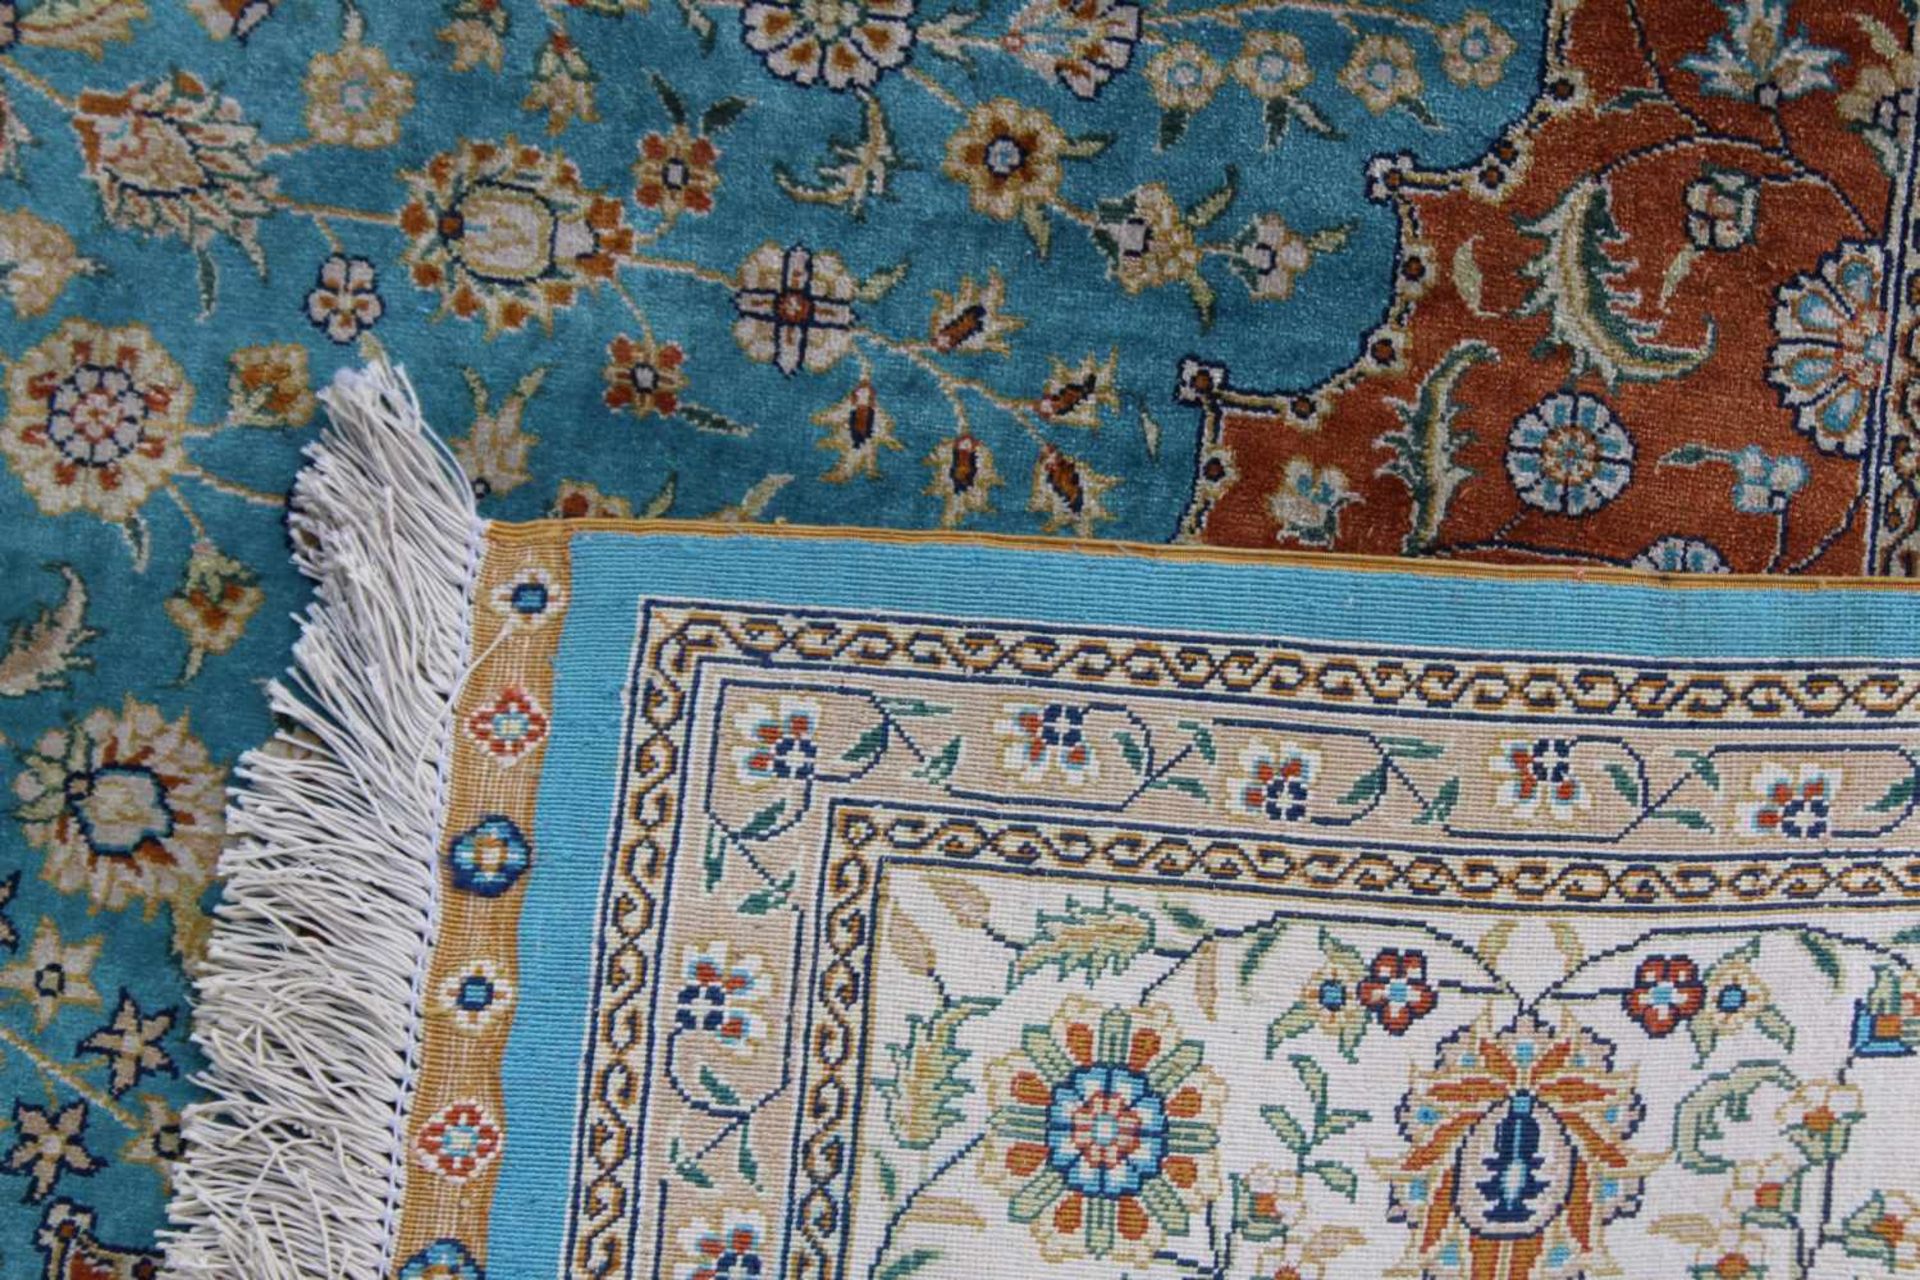 Teppich, China-Seide 20. Jh.Sehr feine Knüpfung, Seide auf Seide, beige, braun und rotgrundig, - Image 3 of 3